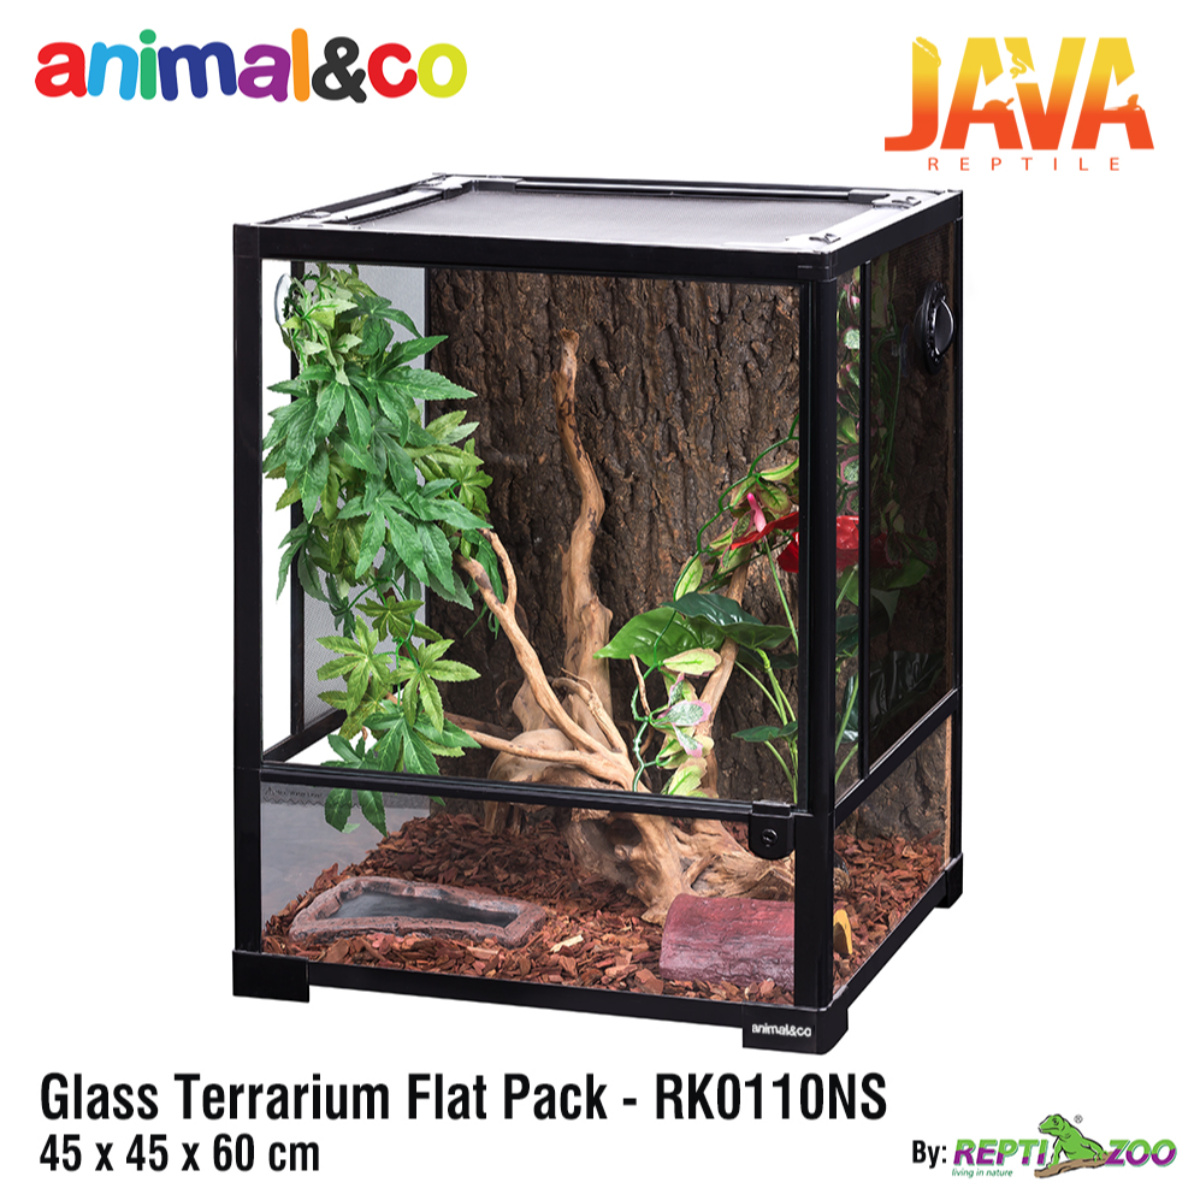 Animal&co Glass Terrarium 45x45x60cm by Reptizoo RK0110NS